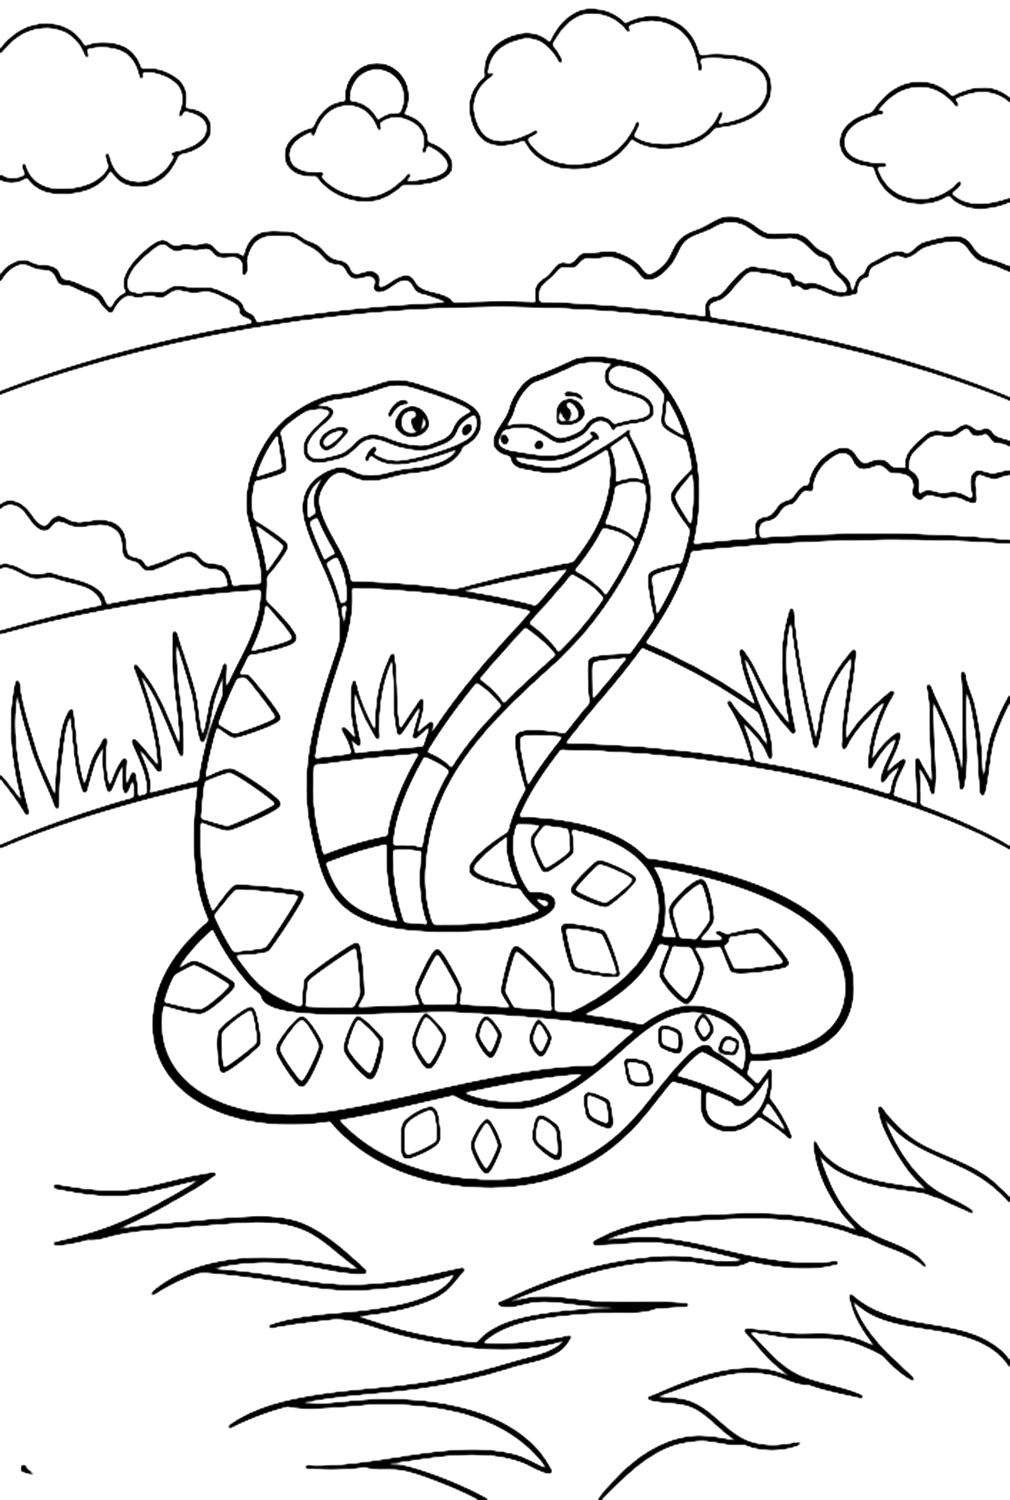 Immagine Python da colorare da Python